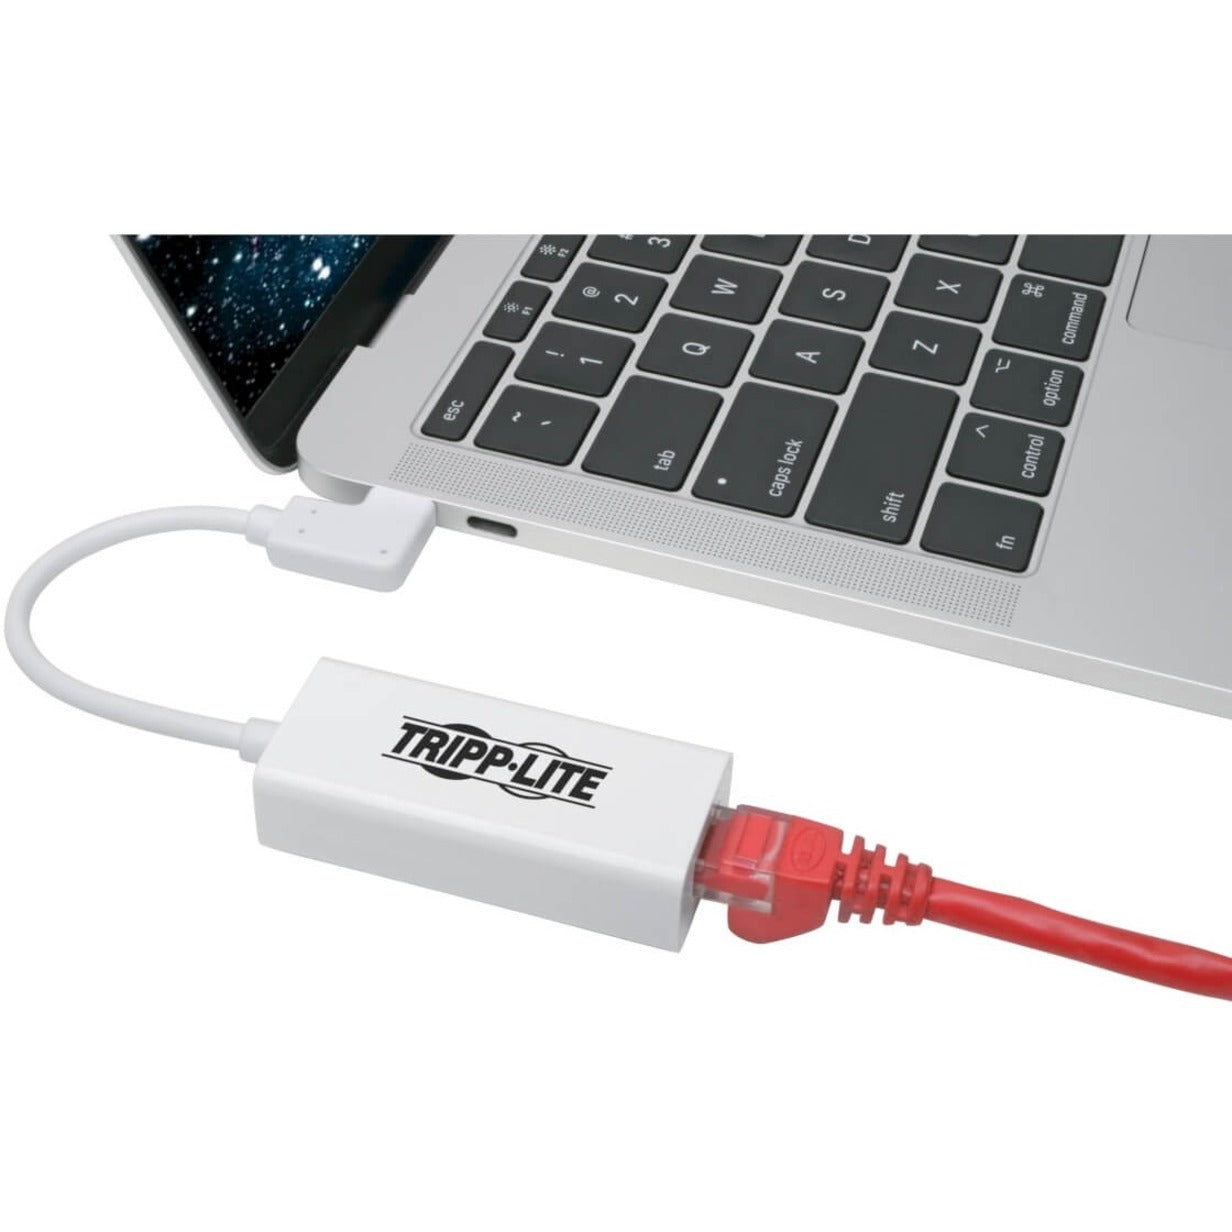 تريب لايت U436-06N-GBW-RA بطاقة شبكة إيثرنت غيغابت، محول USB-C زاوية الحق USB 3.1 GEN 1  العلامة التجارية: تريب لايت